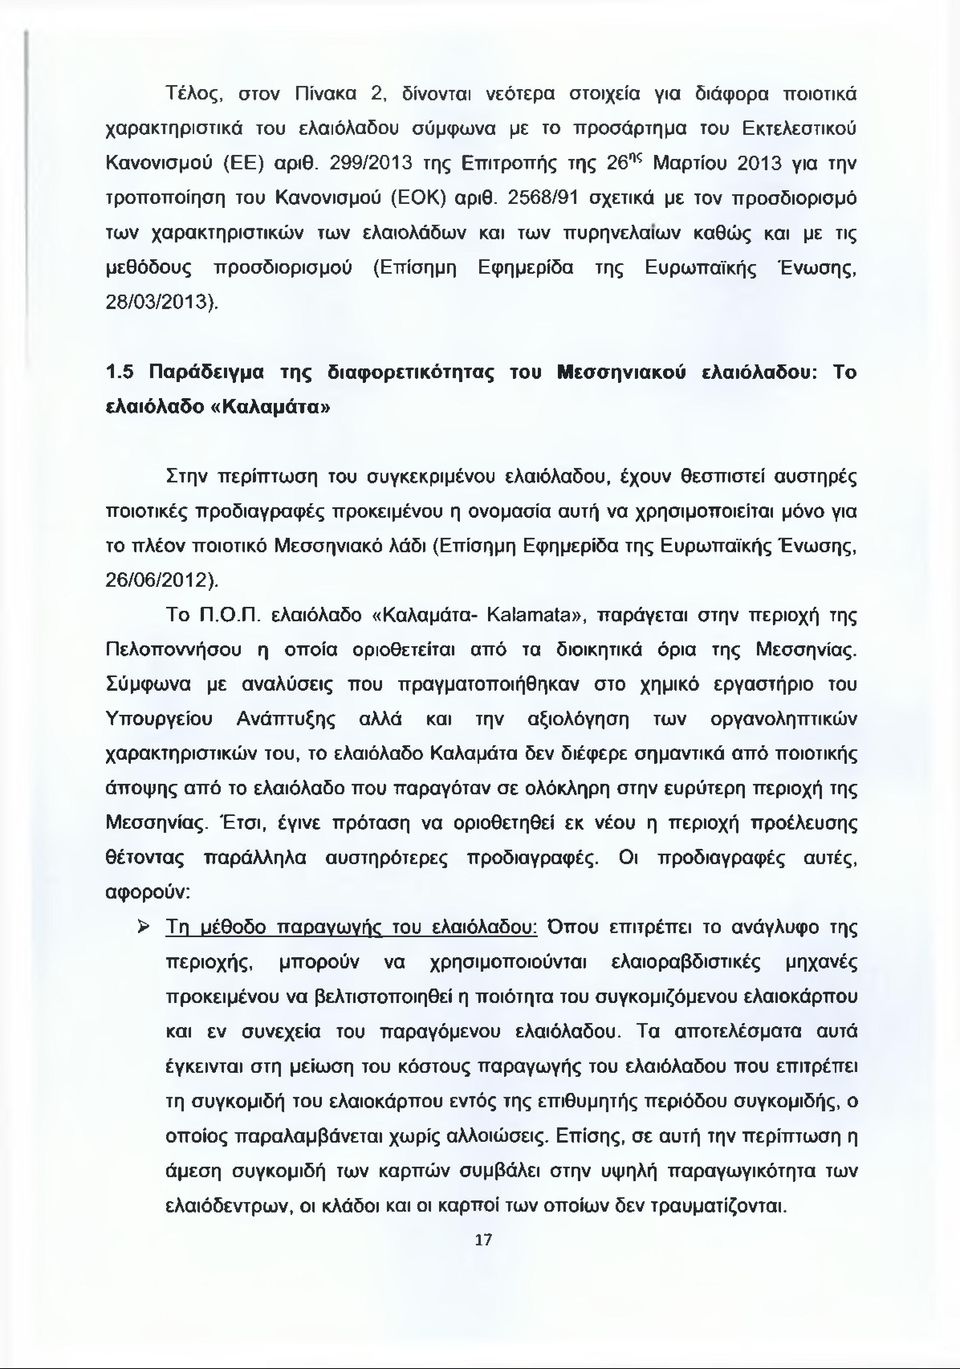 2568/91 σχετικά με τον προσδιορισμό των χαρακτηριστικών των ελαιολάδων και των πυρηνέλαιων καθώς και με τις μεθόδους προσδιορισμού (Επίσημη Εφημερίδα της Ευρωπαϊκής Ένωσης, 28/03/2013). 1.